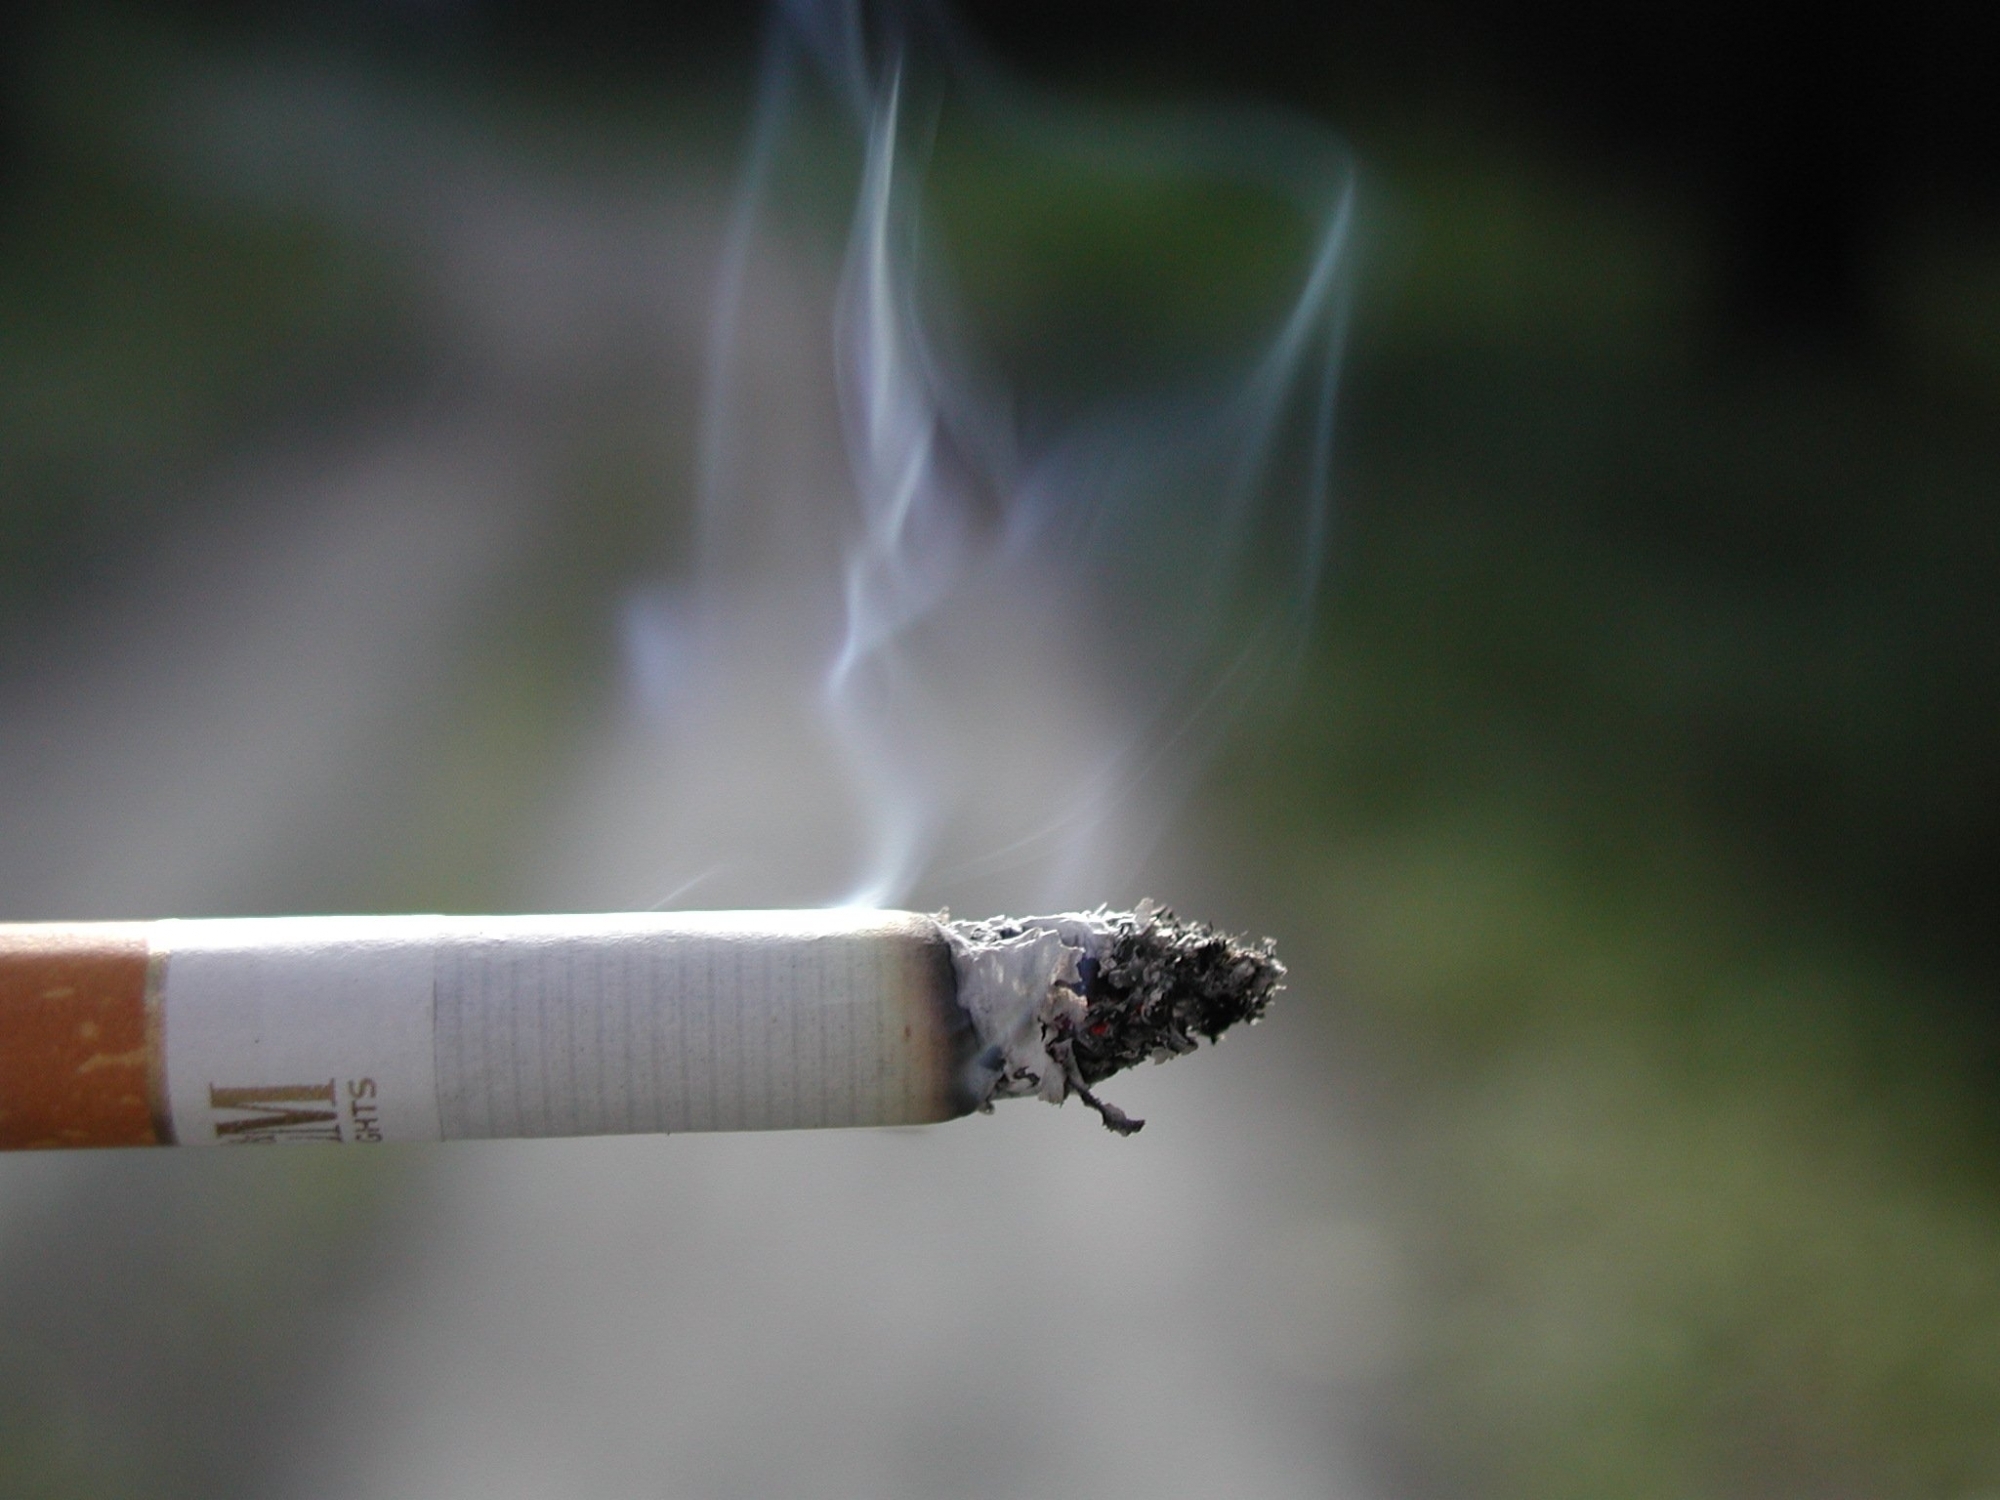 COPD in Covid-19 era: Smokers, beware!